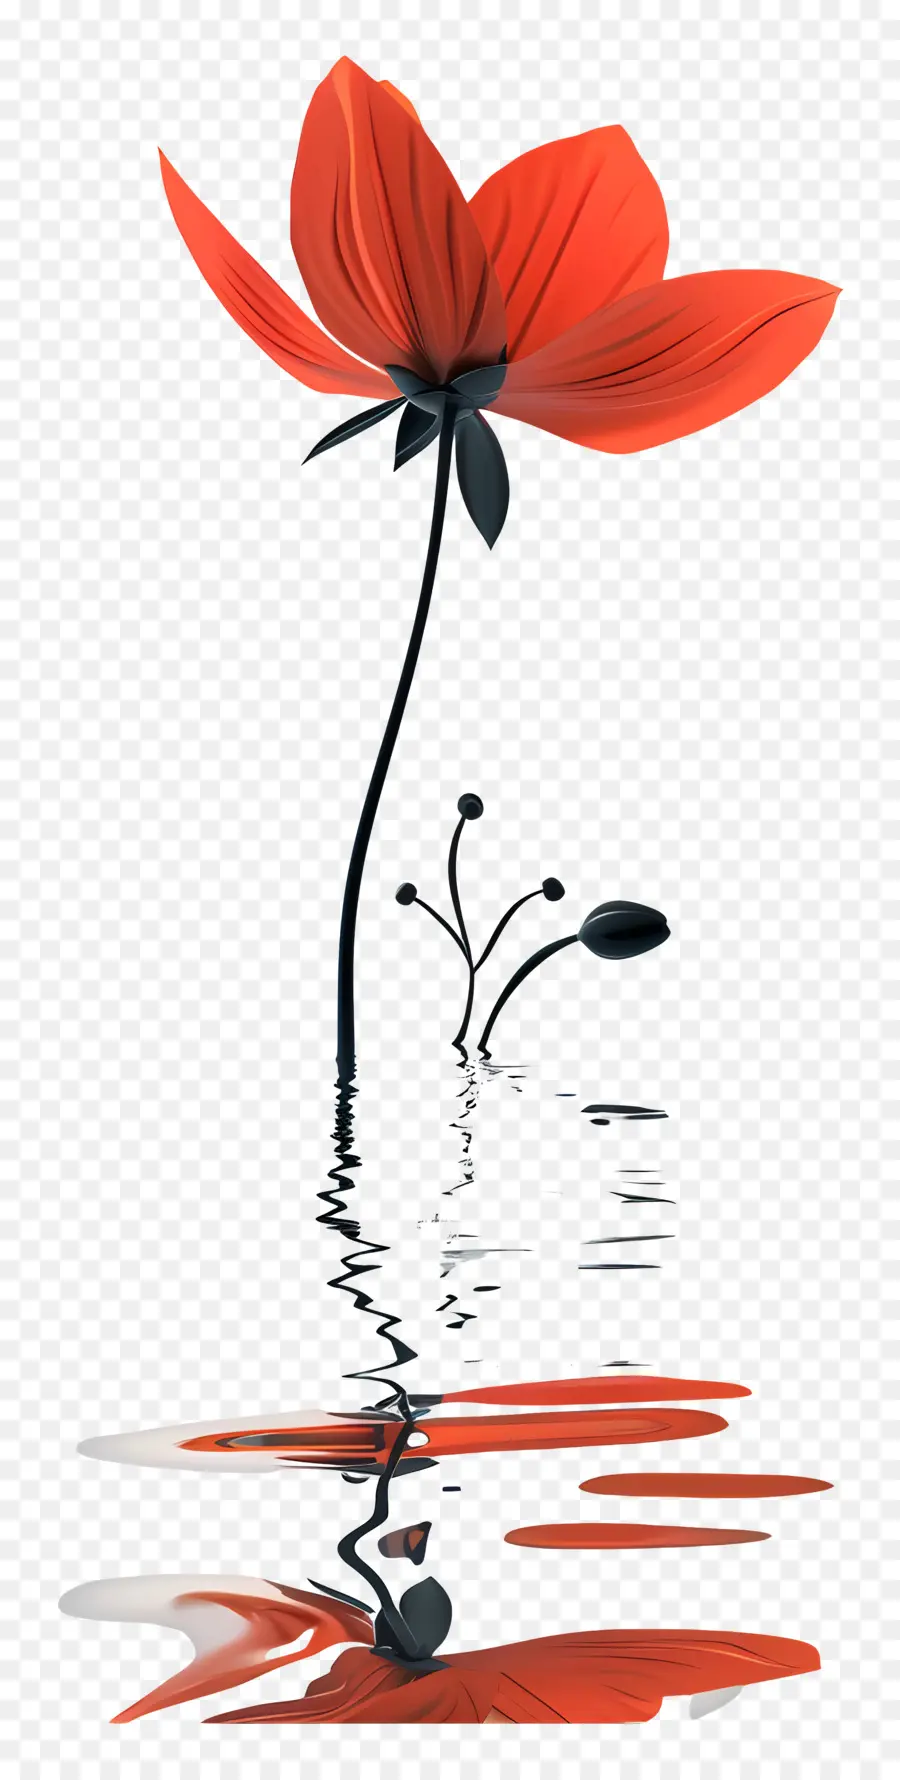 rote Blume - Rote Blume mit schwarzen Flecken auf Wasser